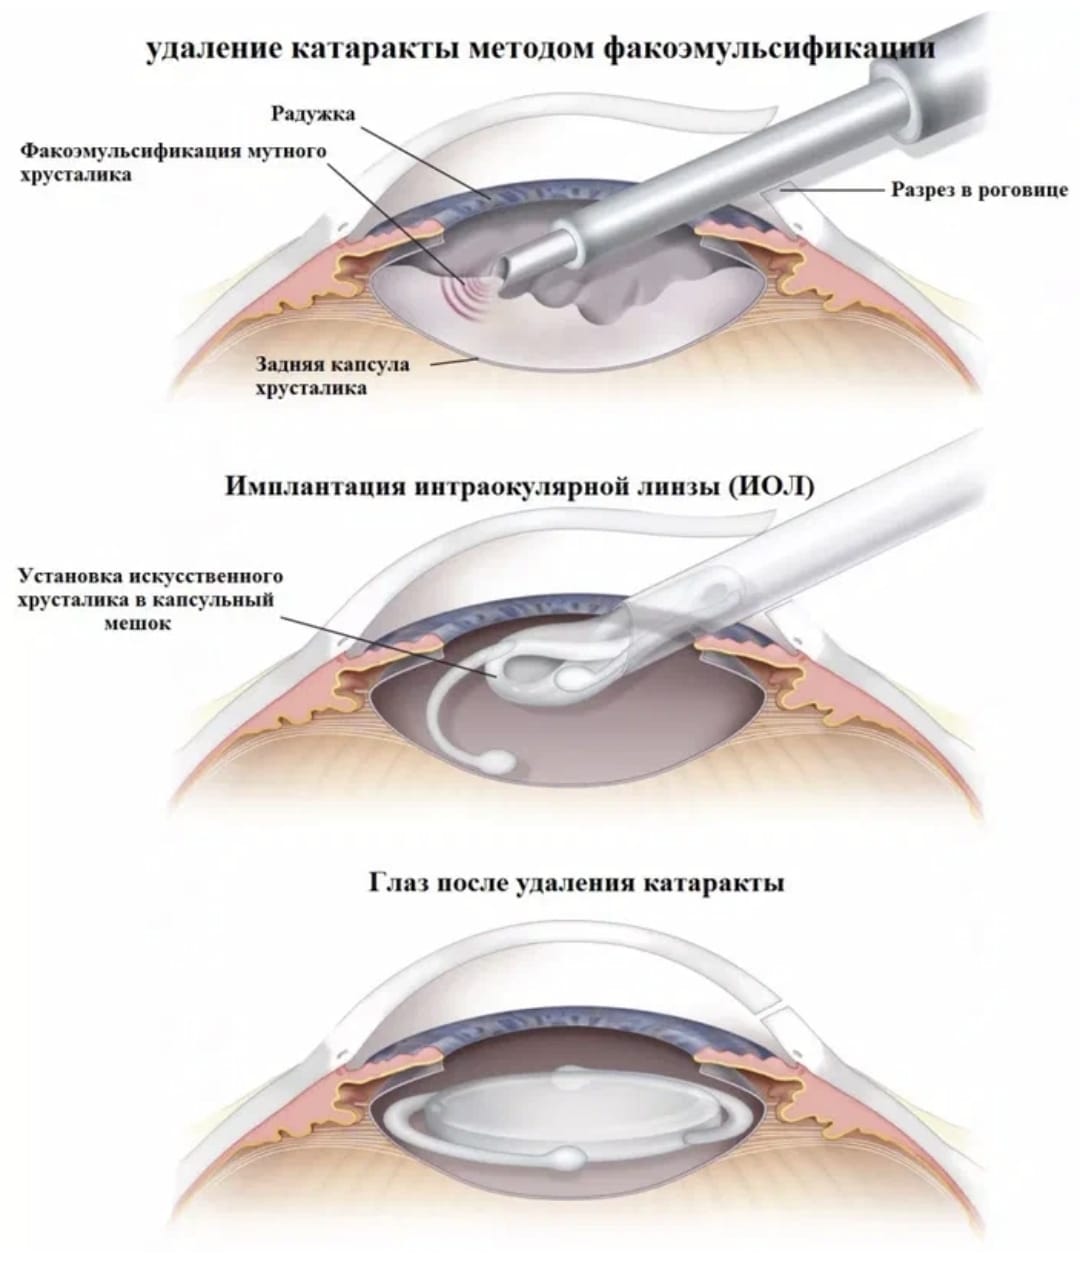 Оперативное лечение катаракты. Ультразвуковая факоэмульсификация катаракты этапы. Ультразвуковая факоэмульсификация с имплантацией ИОЛ. Техника факоэмульсификации катаракты с имплантацией ИОЛ. Факоэмульсификация катаракты этапы операции.